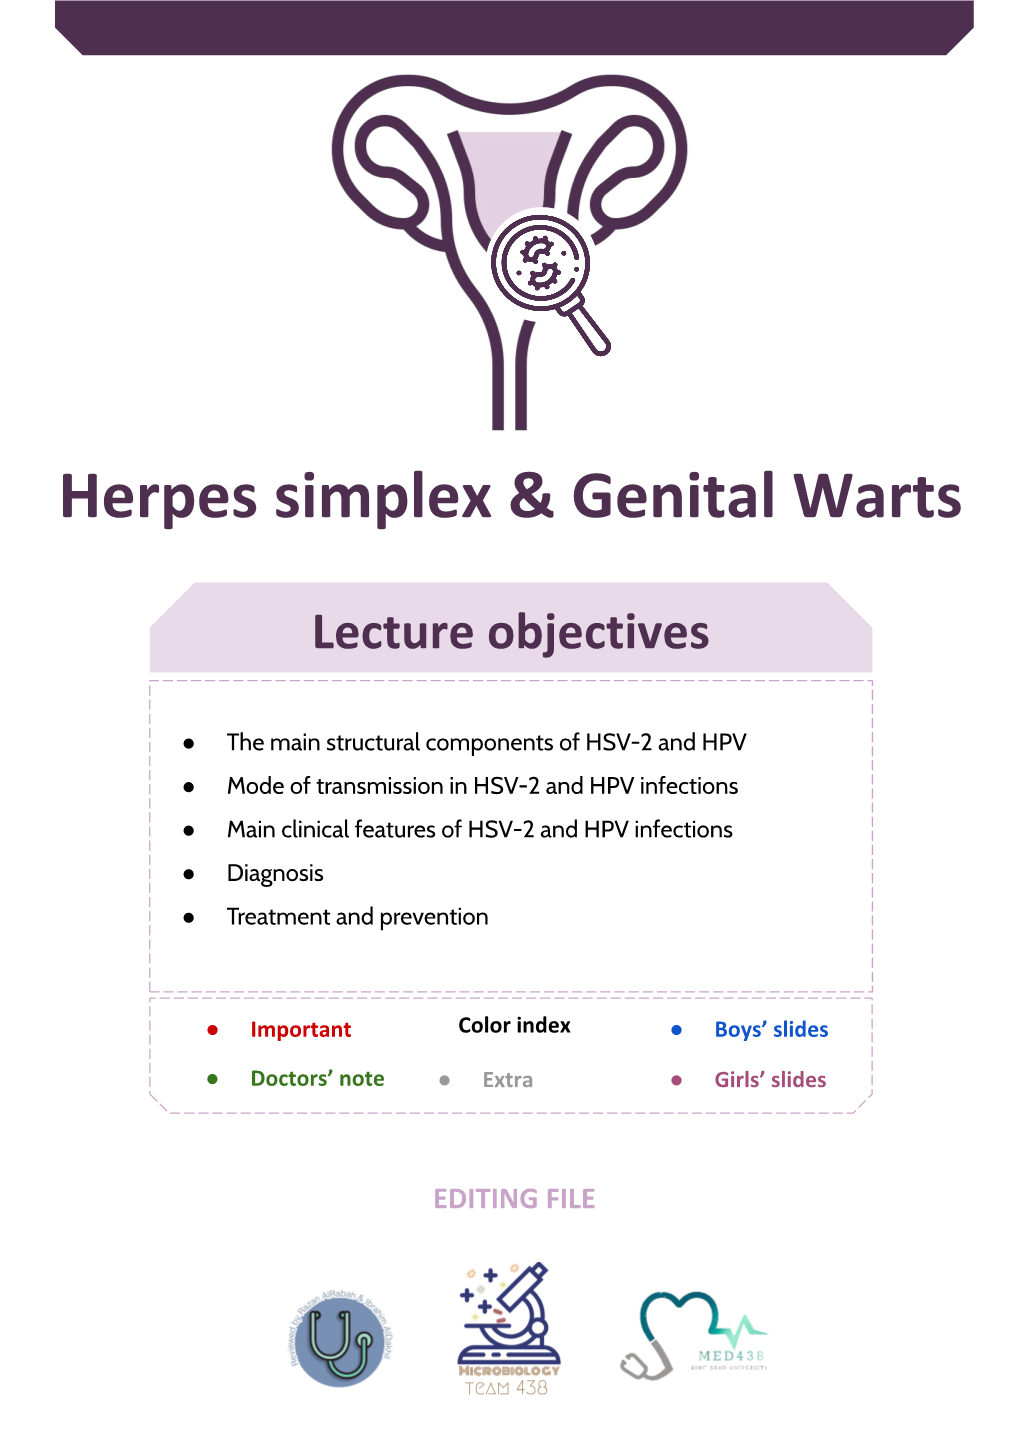 Herpes Simplex & Genital Warts